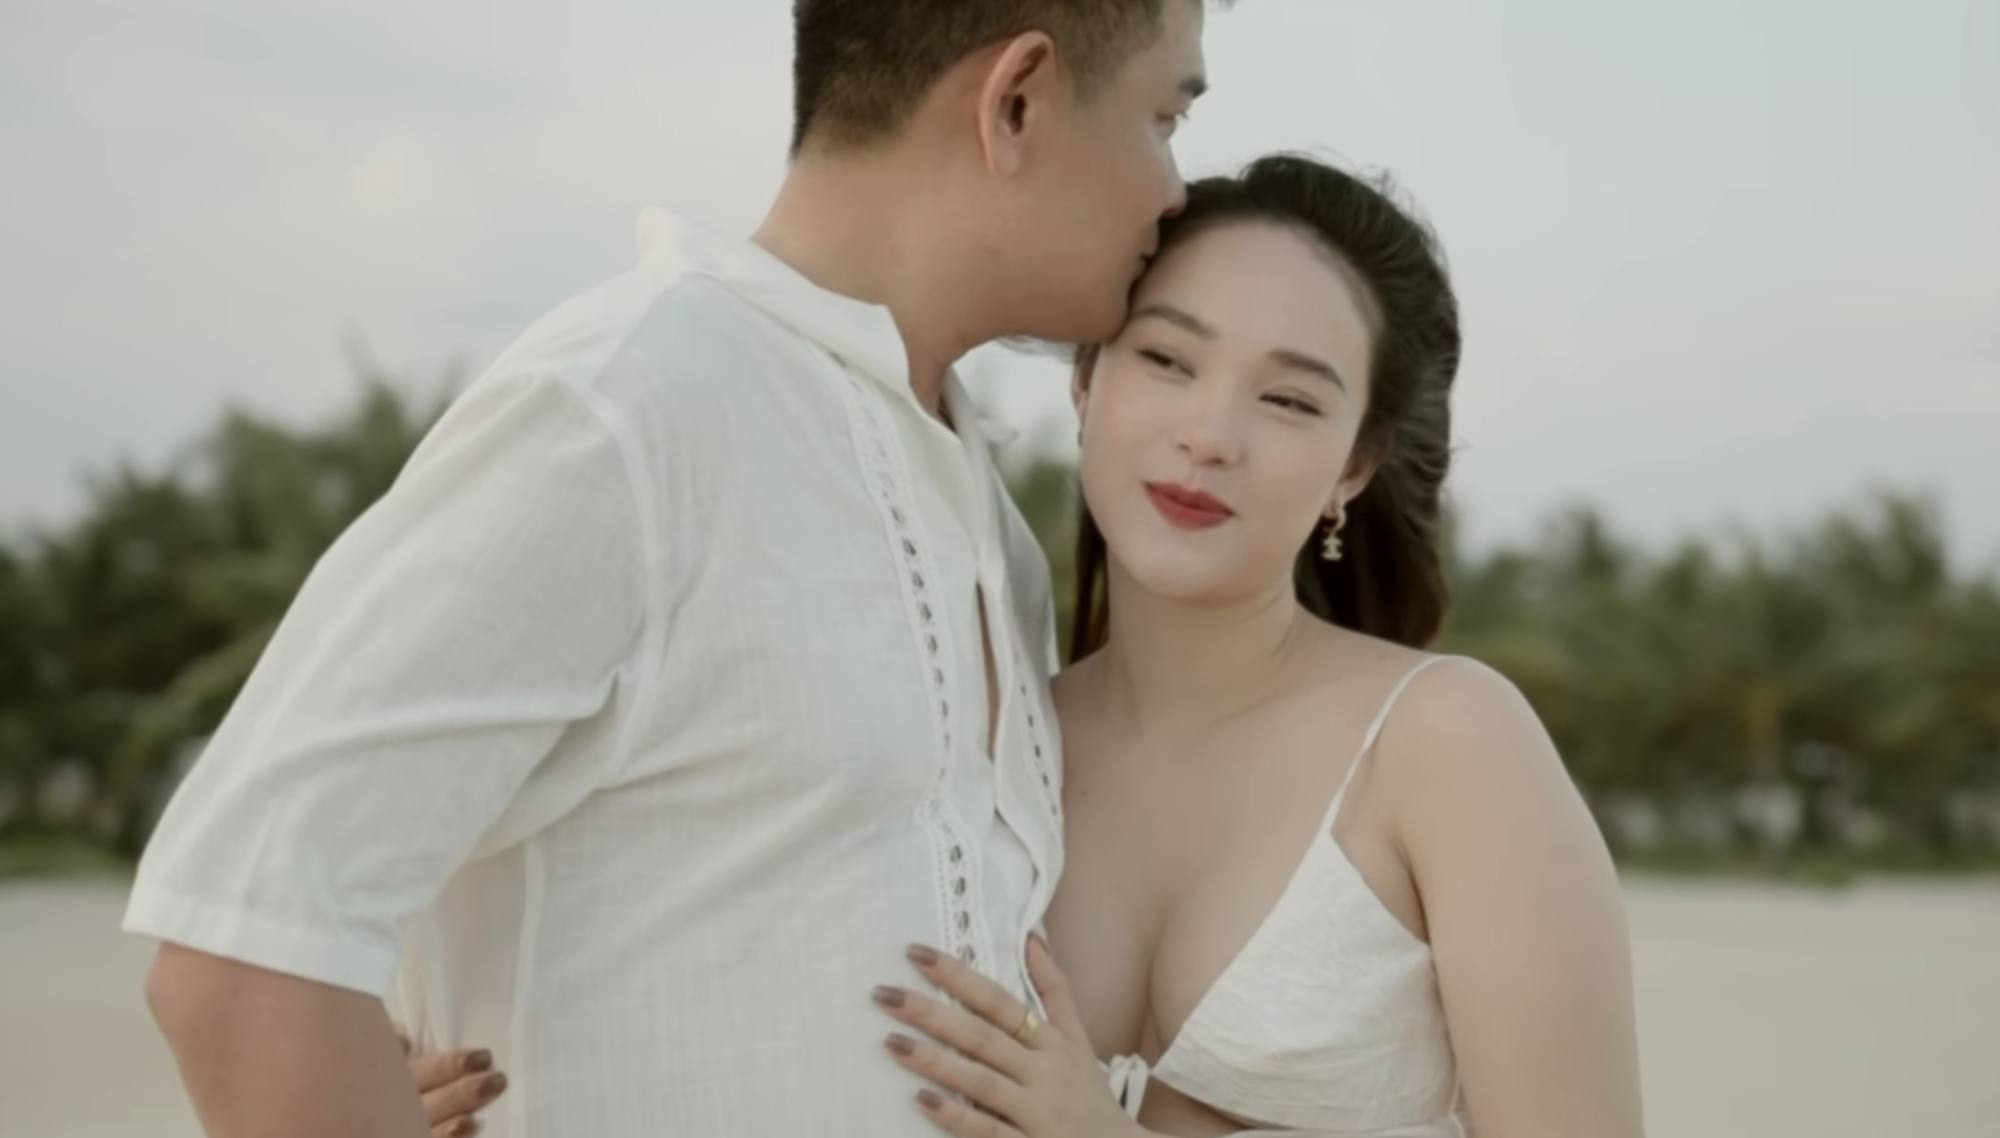 Chồng kín tiếng tiết lộ cuộc sống hôn nhân với ca sĩ Minh Hằng